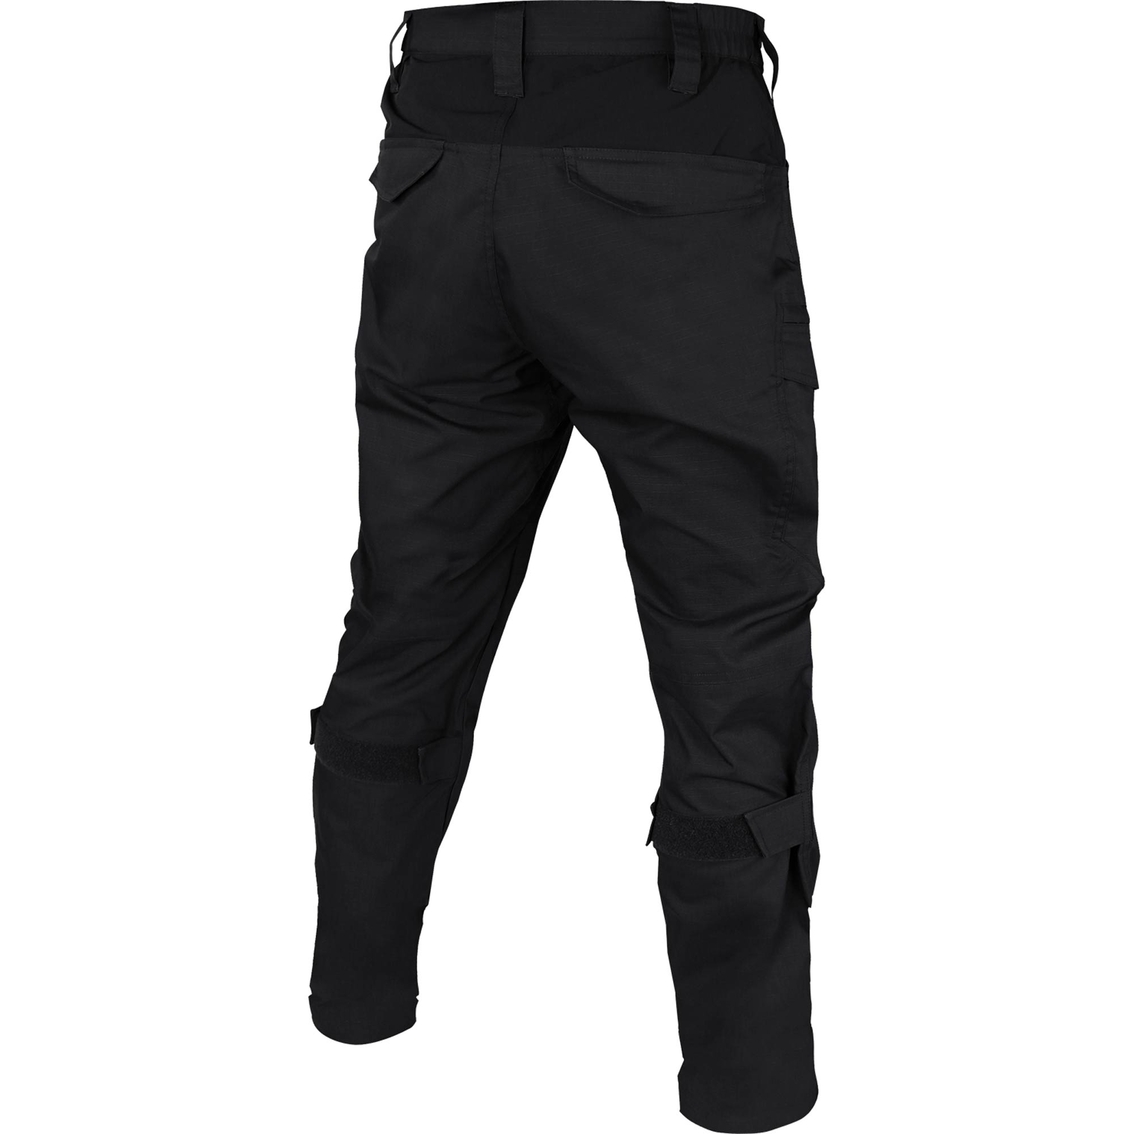 Condor Paladin Tactical Pants | Pants & Shorts | Military | Shop The ...